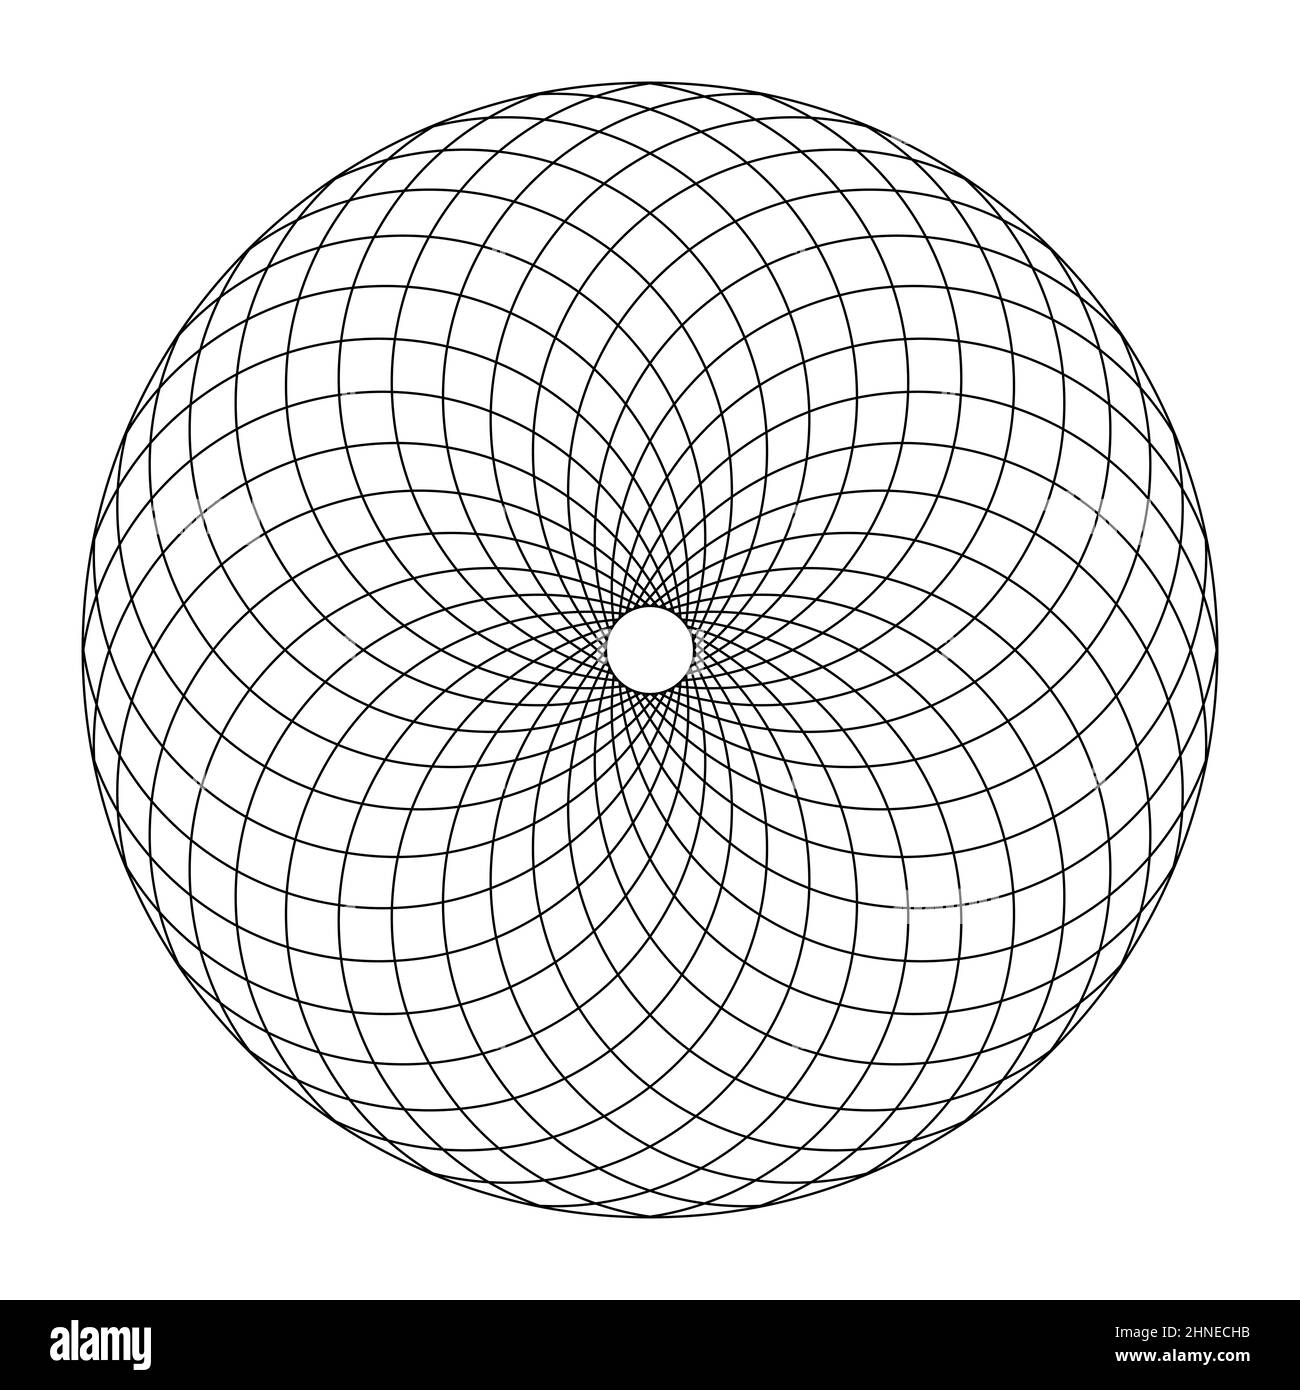 Modèle circulaire de Fibonacci, selon la structure d'un cône de pin. Zone circulaire formée par une spirale comme des lignes disposées, créant des motifs trapézoïdaux. Banque D'Images